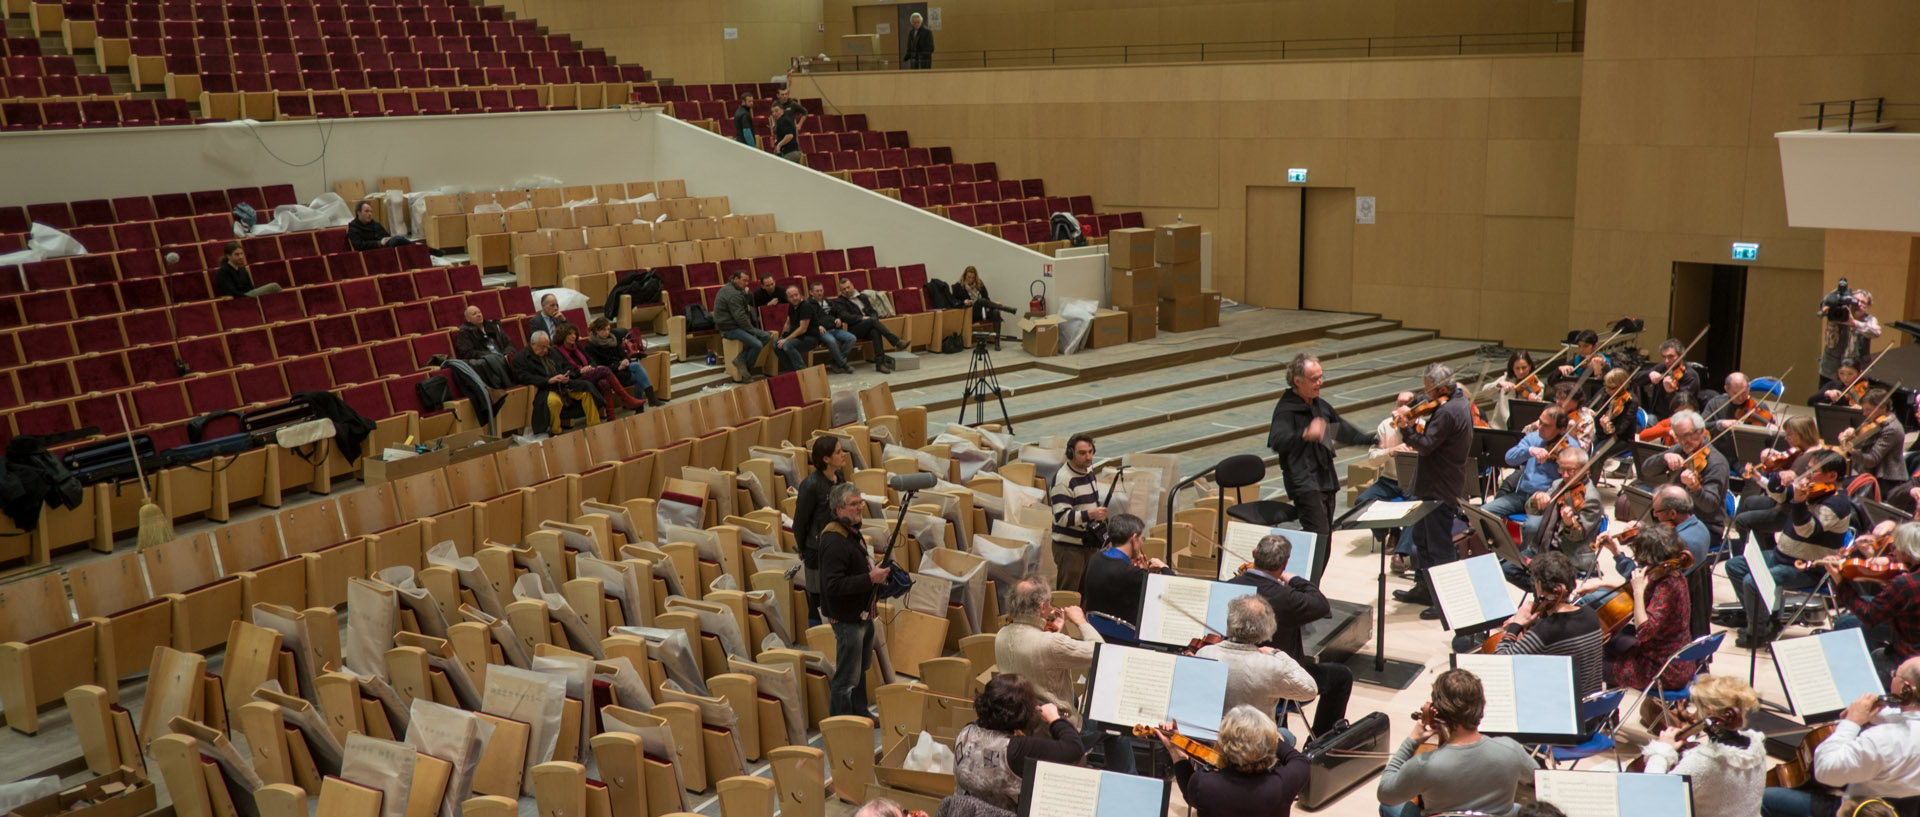 Première répétition pourl'Orchestre national de Lille et Jean-Claude Casadesus dans le nouvel auditorium du Nouveau Siècle, à Lille.